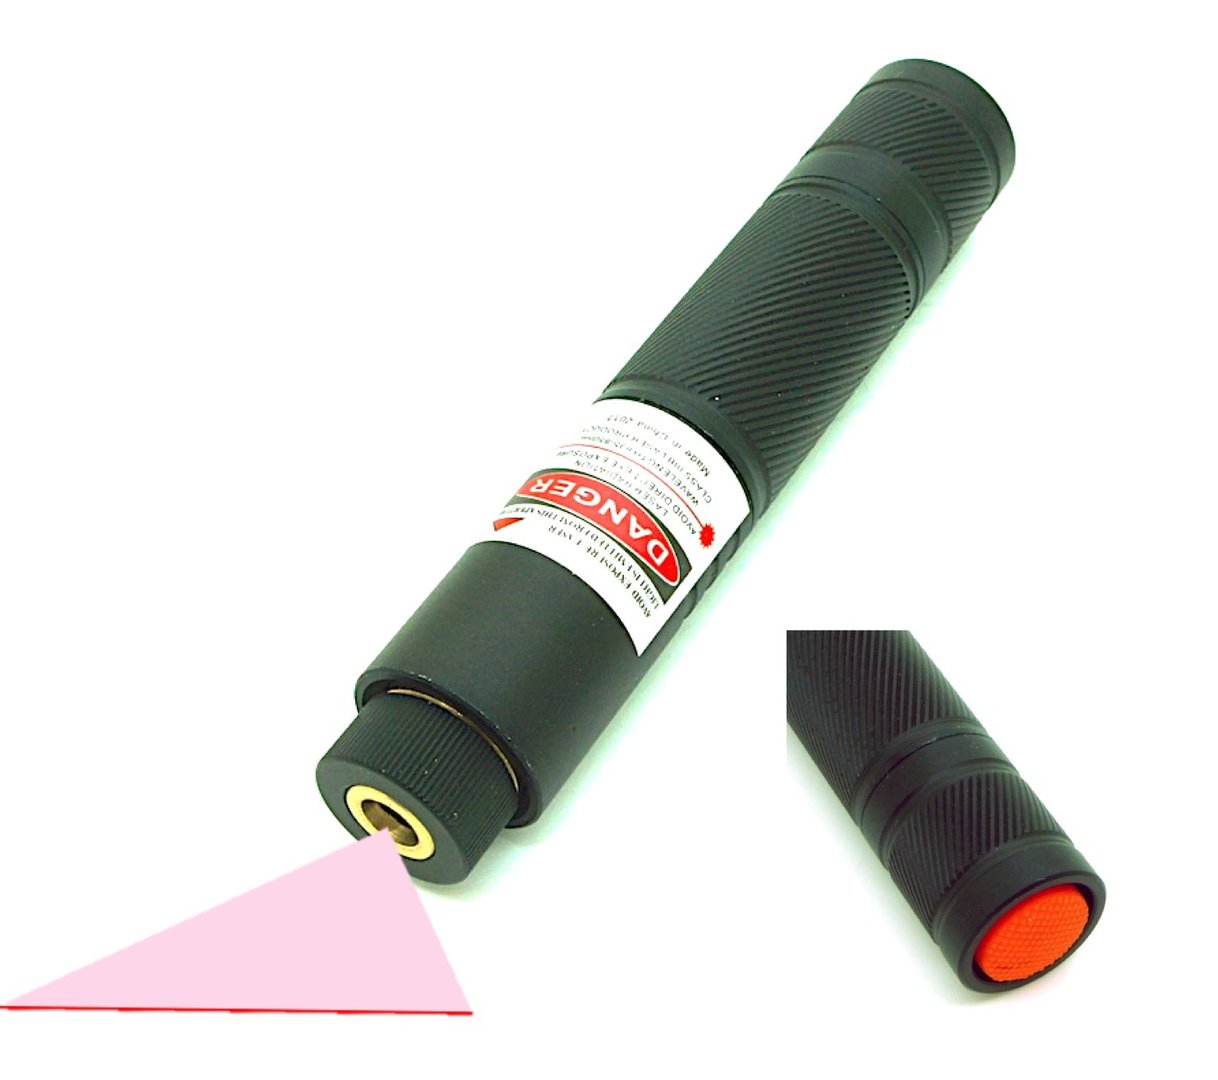 Line laser pointer